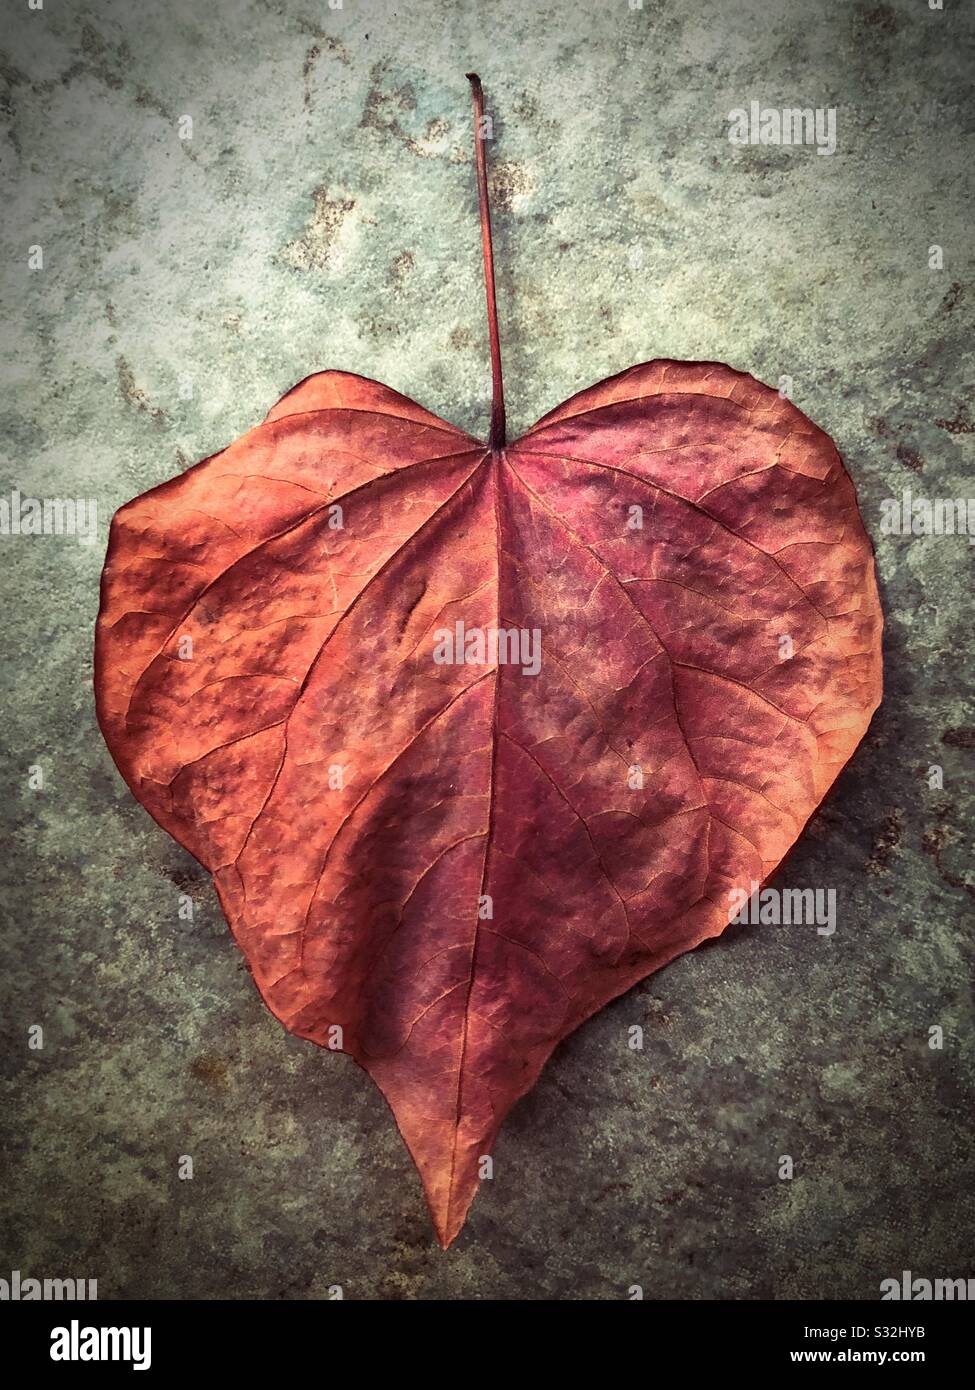 Una hoja seca en forma de corazón. Foto de stock